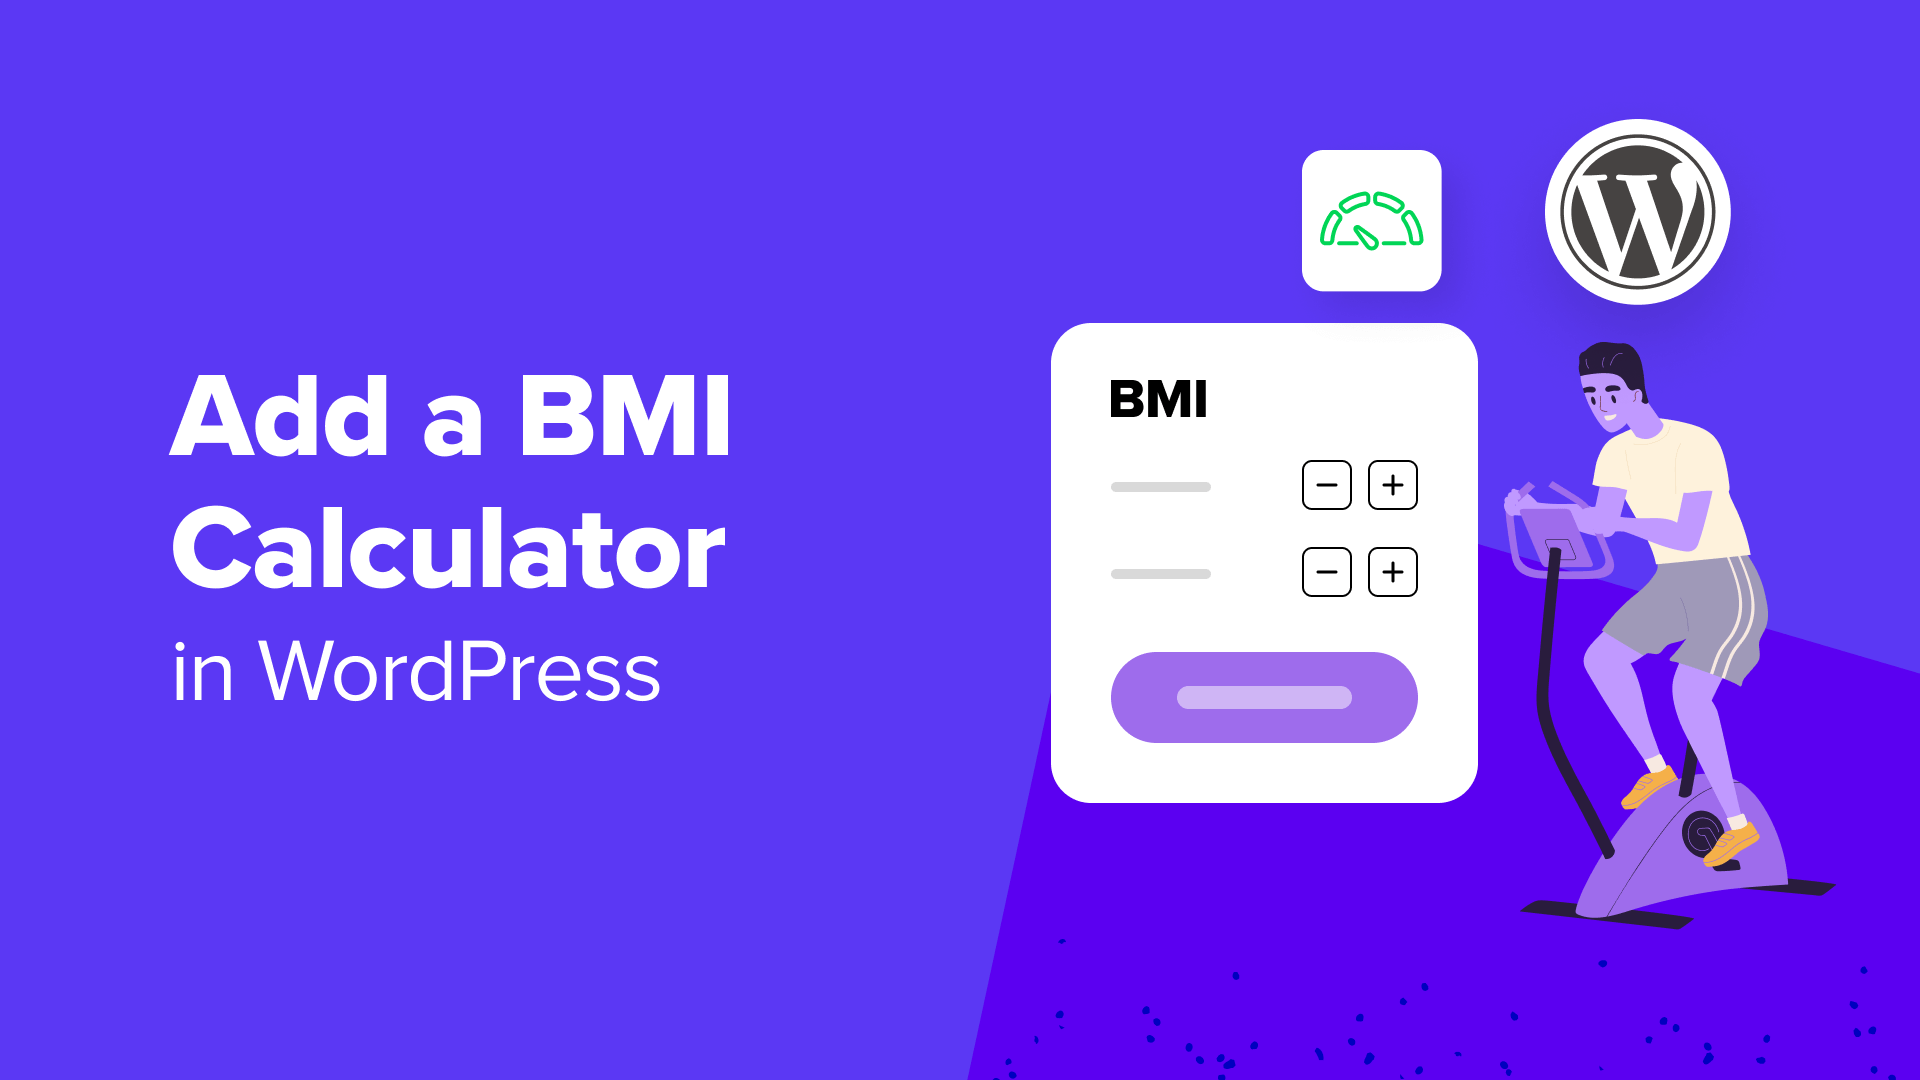 BMI Calculator